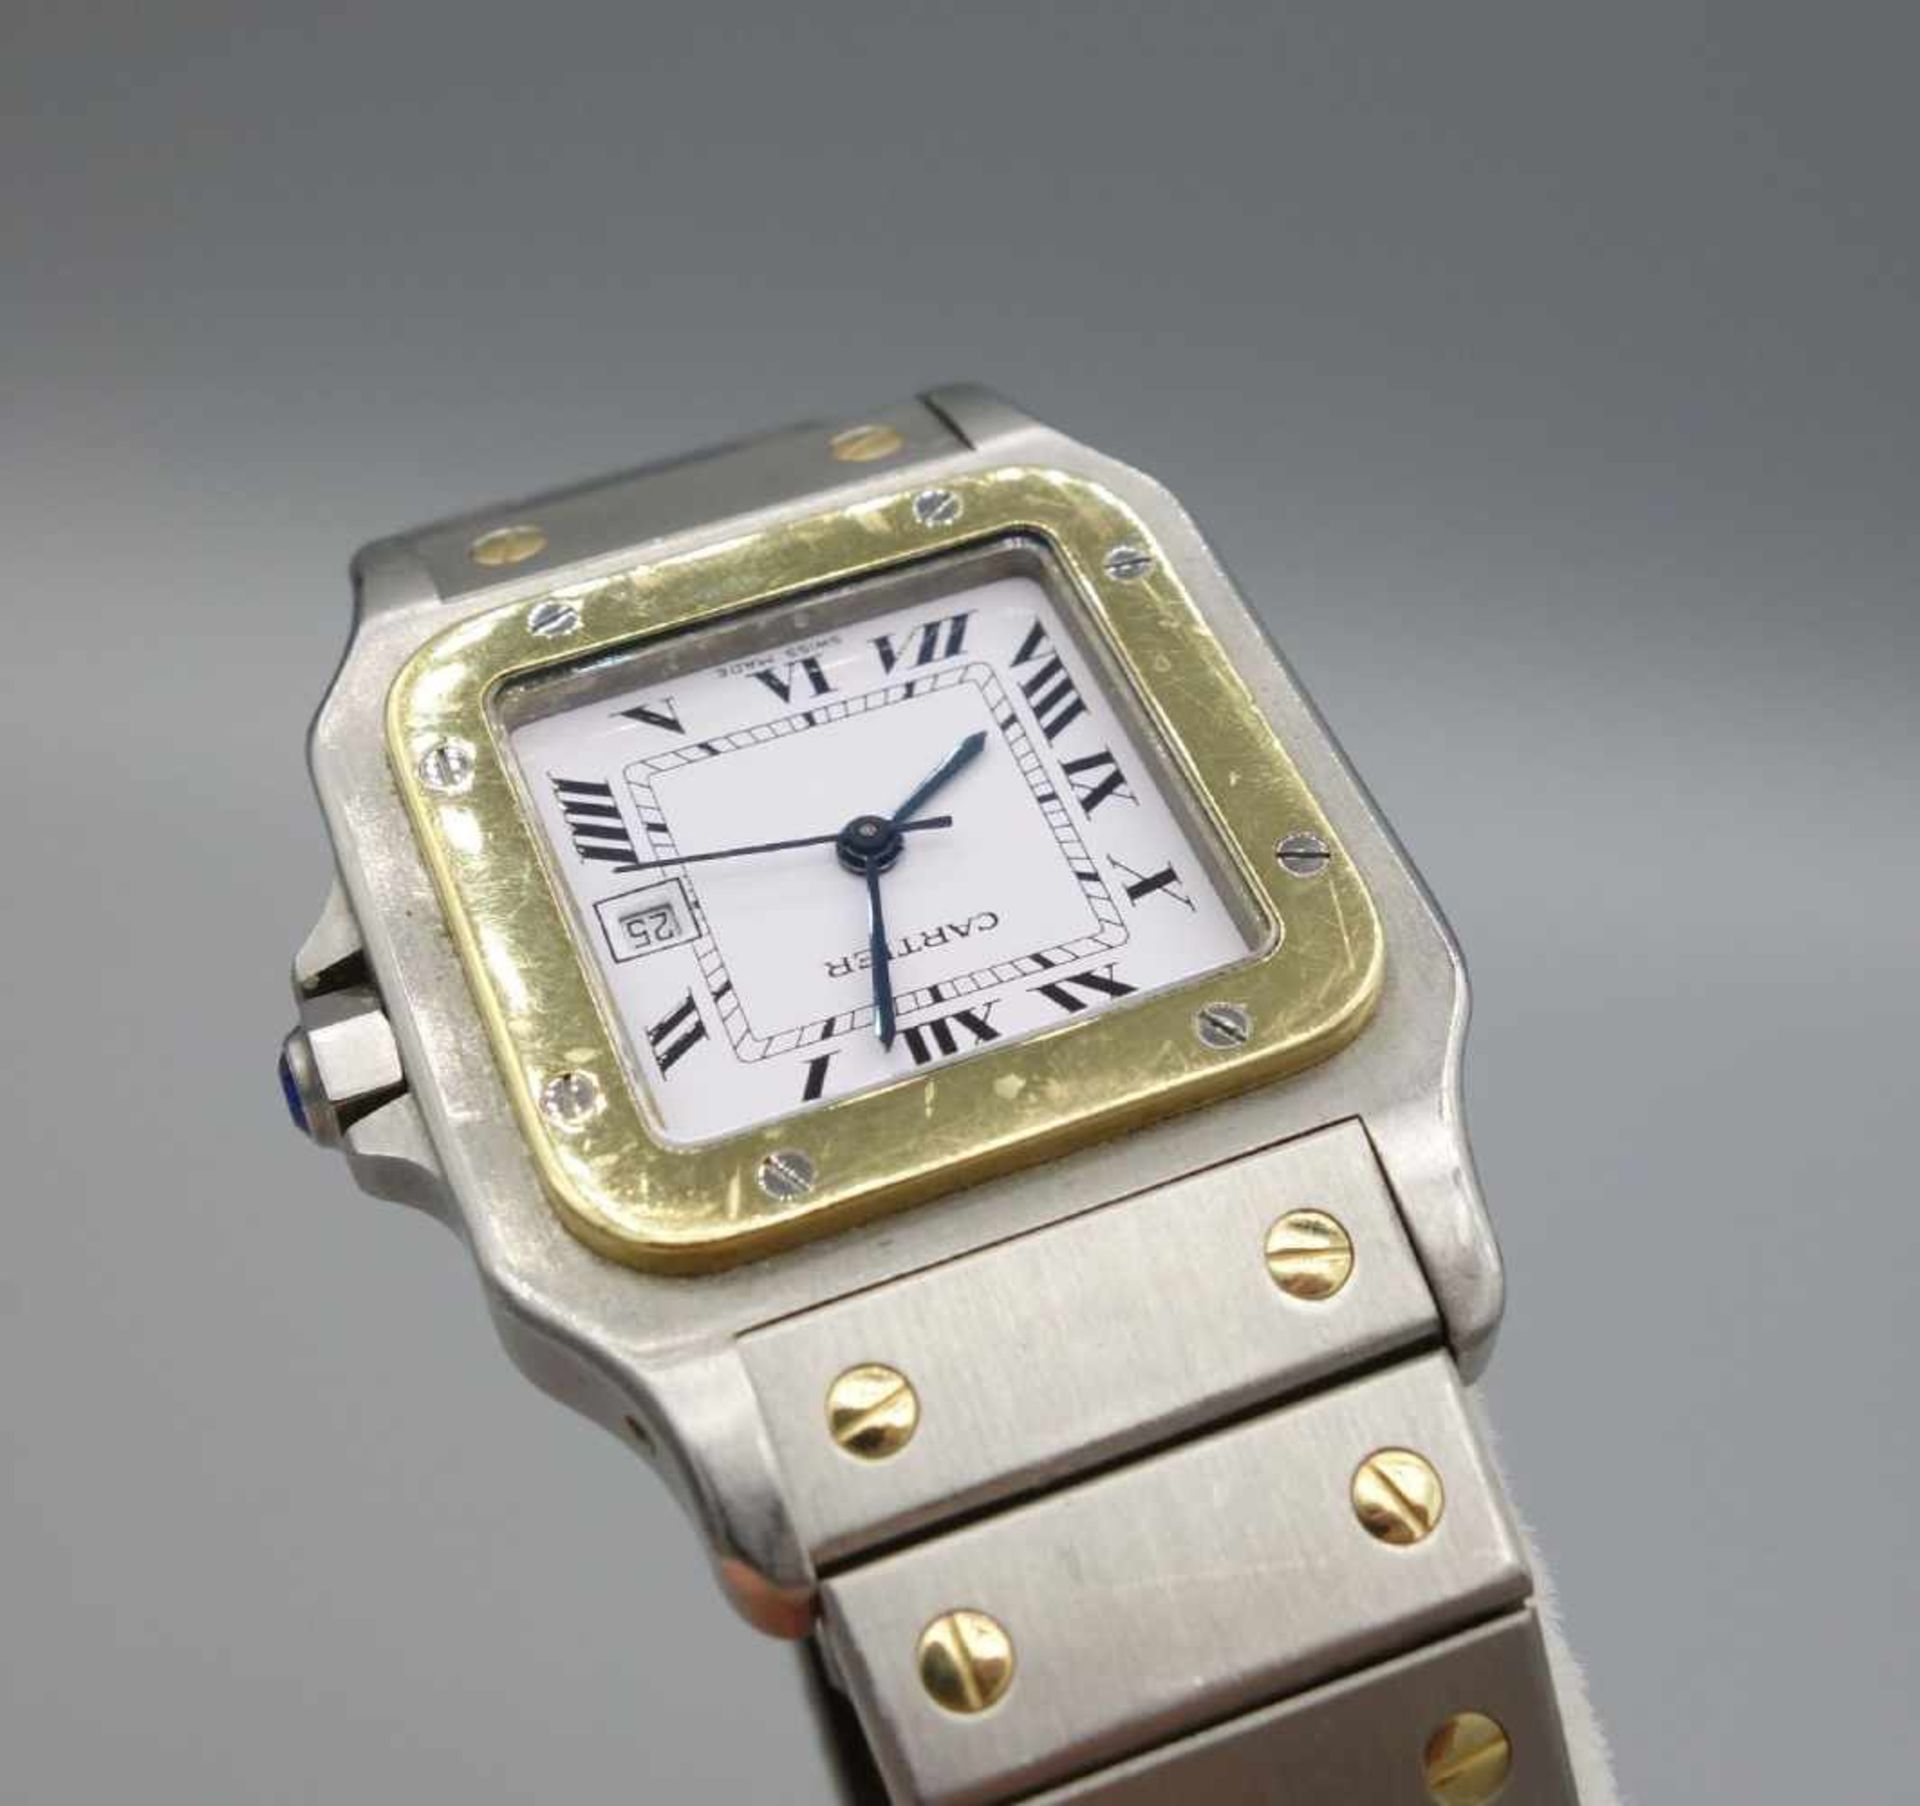 VINTAGE ARMBANDUHR - Cartier "Santos"/ wristwatch, Mitte 20. Jh., Automatik, Manufaktur Cartier SA / - Image 9 of 9